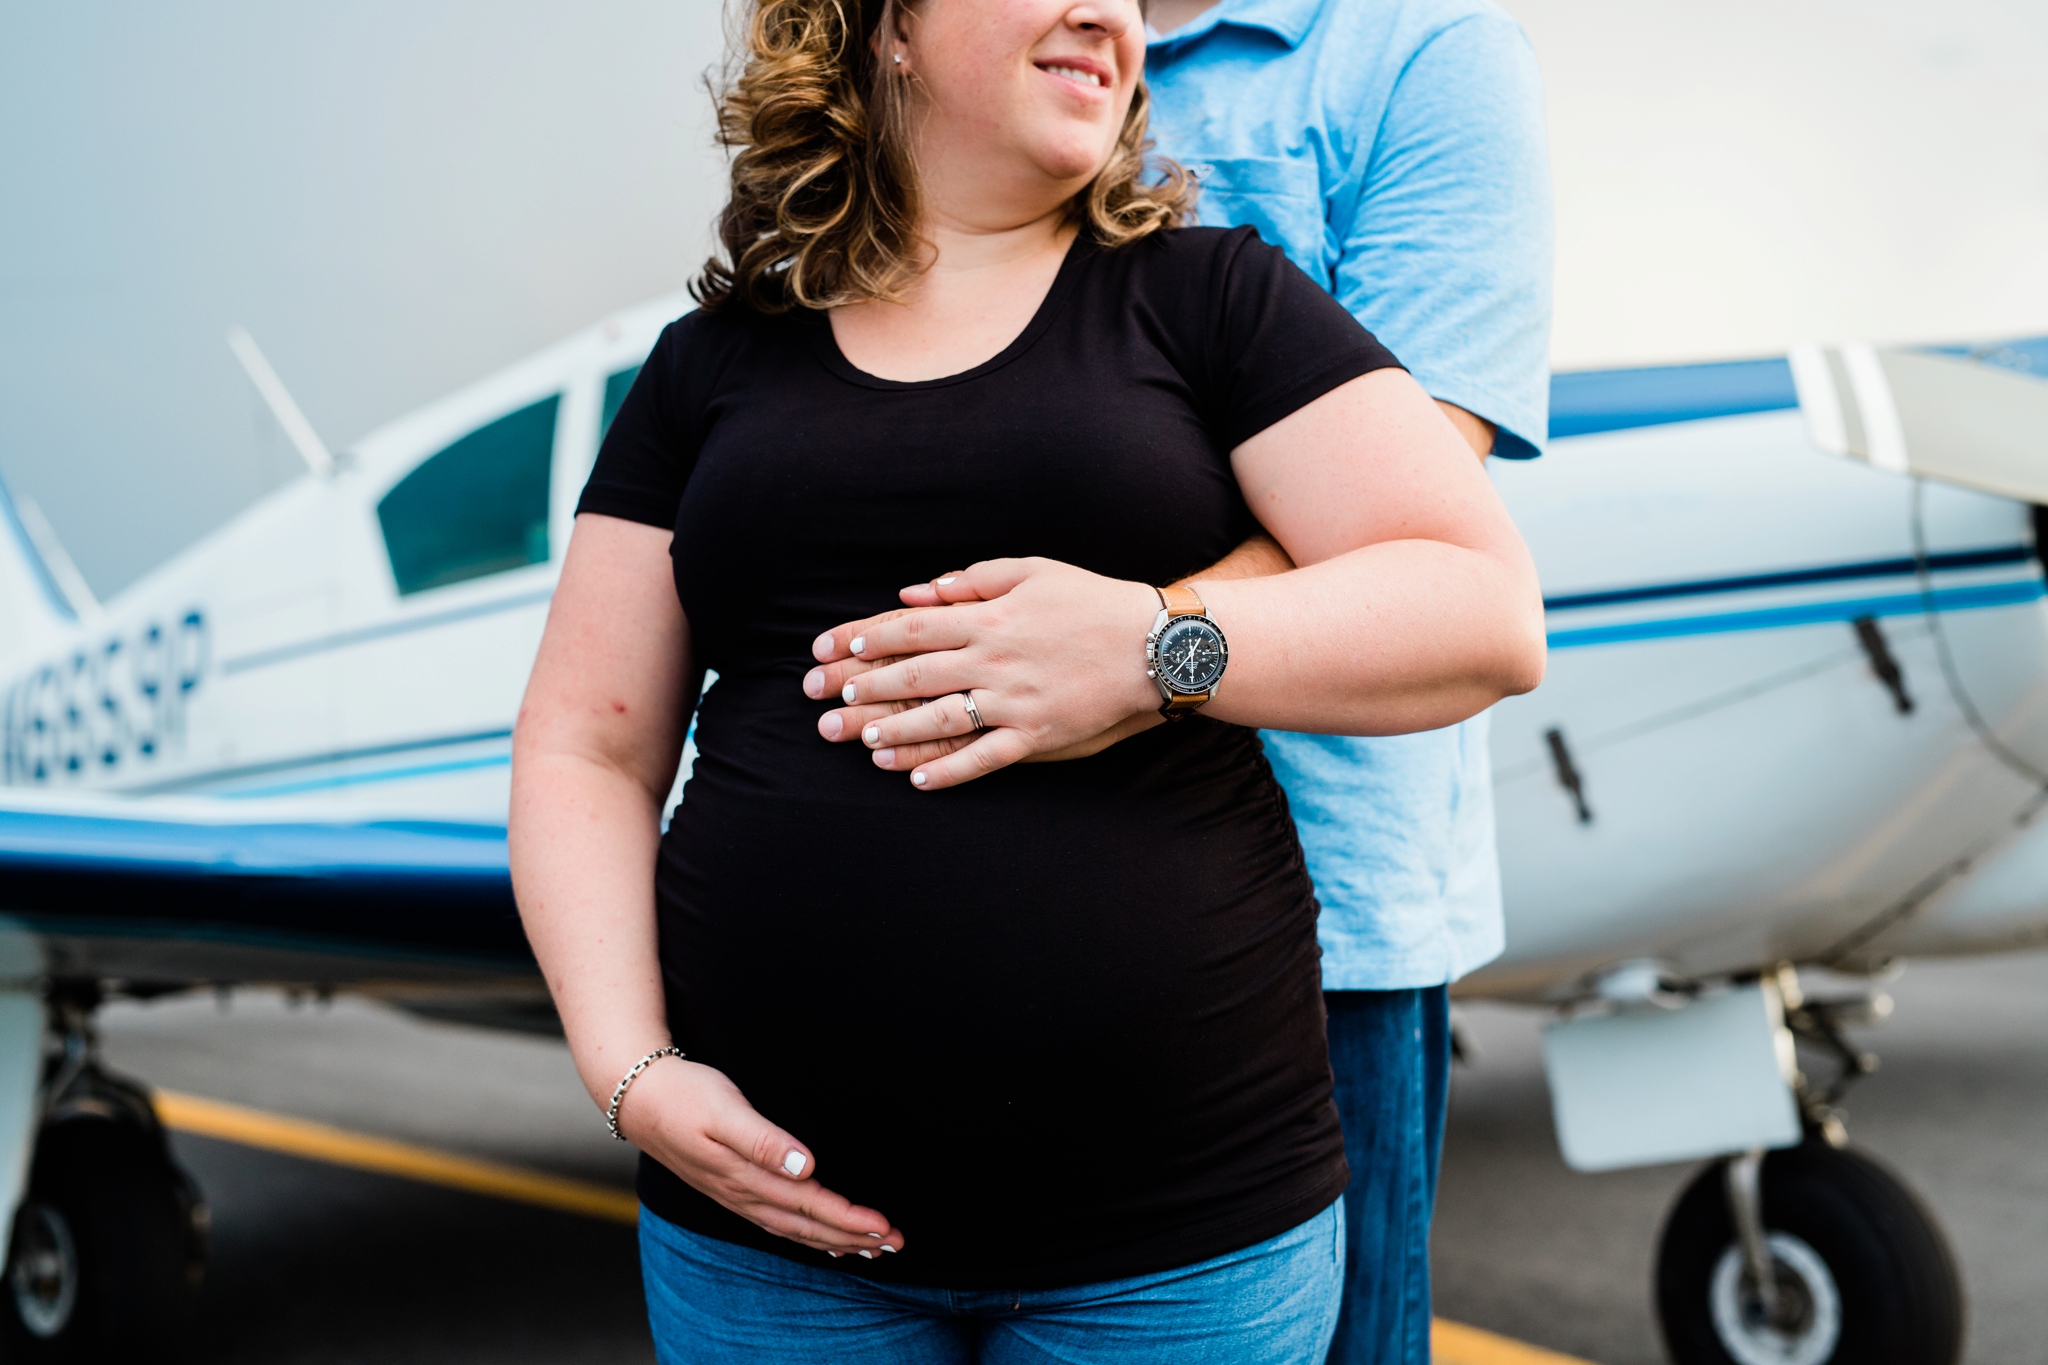 Emily Grace Photography, Lancaster PA Maternity Photographer, Lancaster Airport Maternity Photos, Lititz PA Maternity Photos, Airplane Maternity Photos